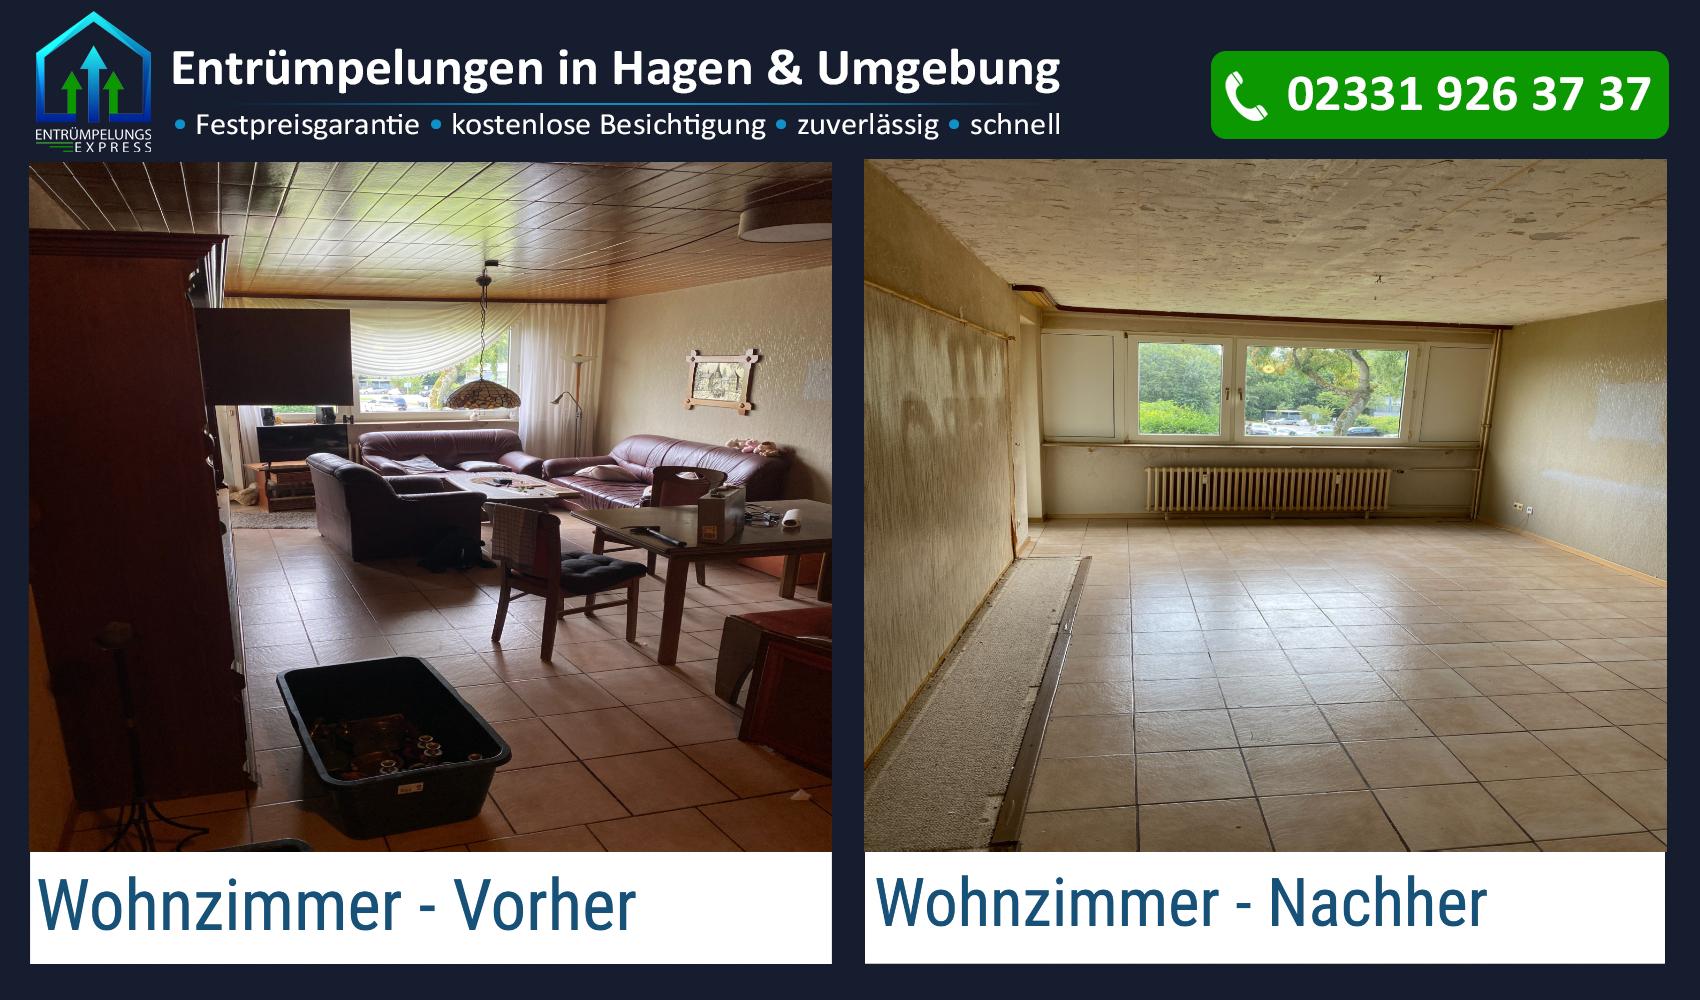 Entrümpelungs Express - Entrümpelungen, Wohnungsauflösungen und Haushaltsauflösungen, Wehringhauser Str. 64 in Hagen